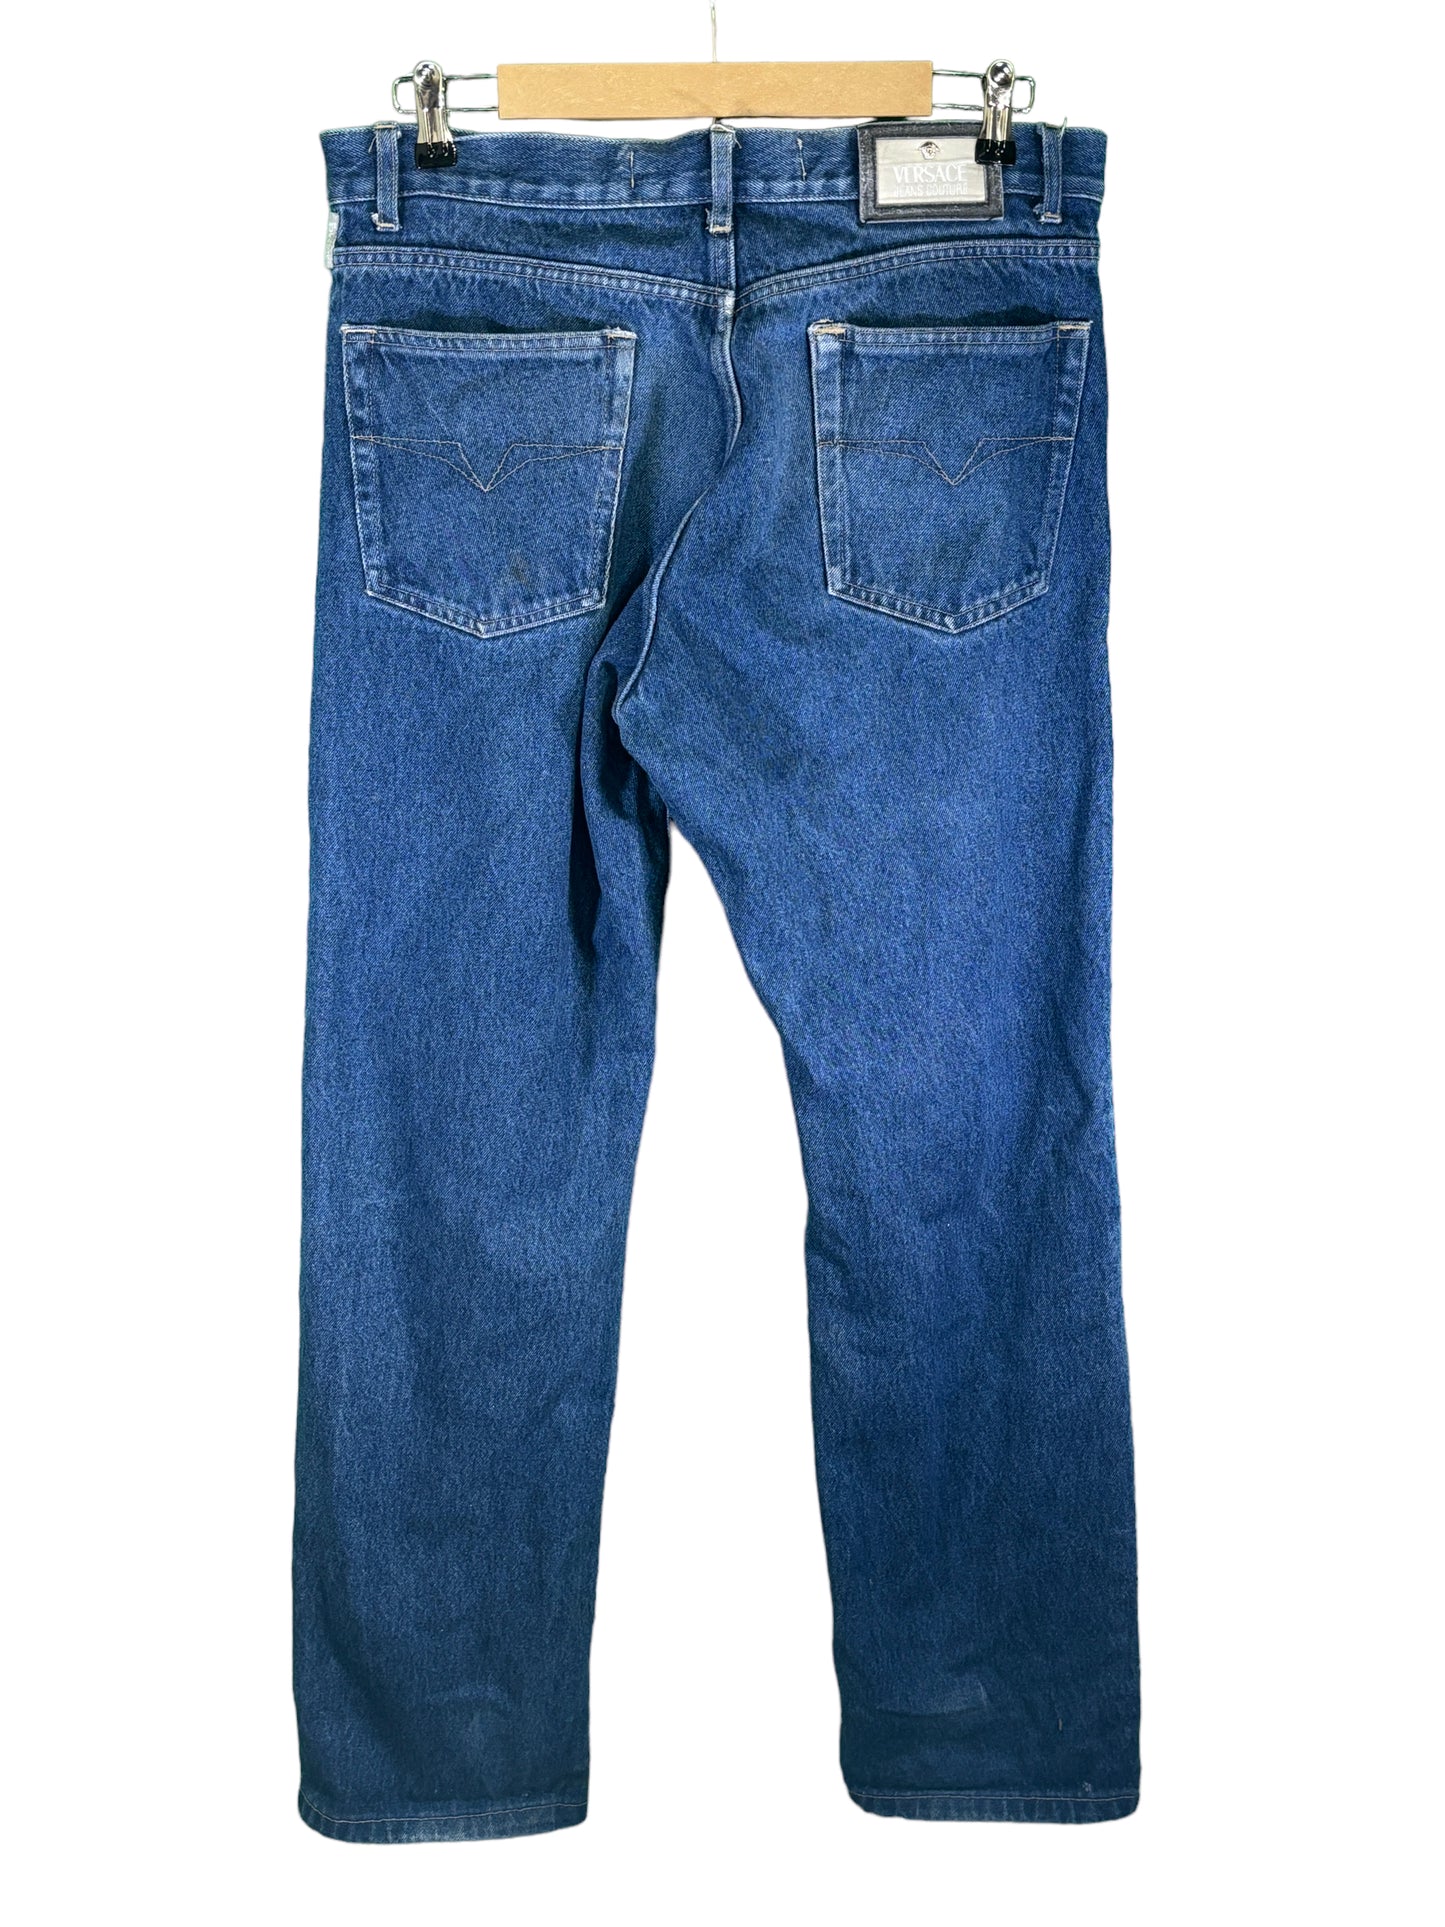 Vintage Versace Jeans Couture Medium Wash Denim Jeans Size 34x31